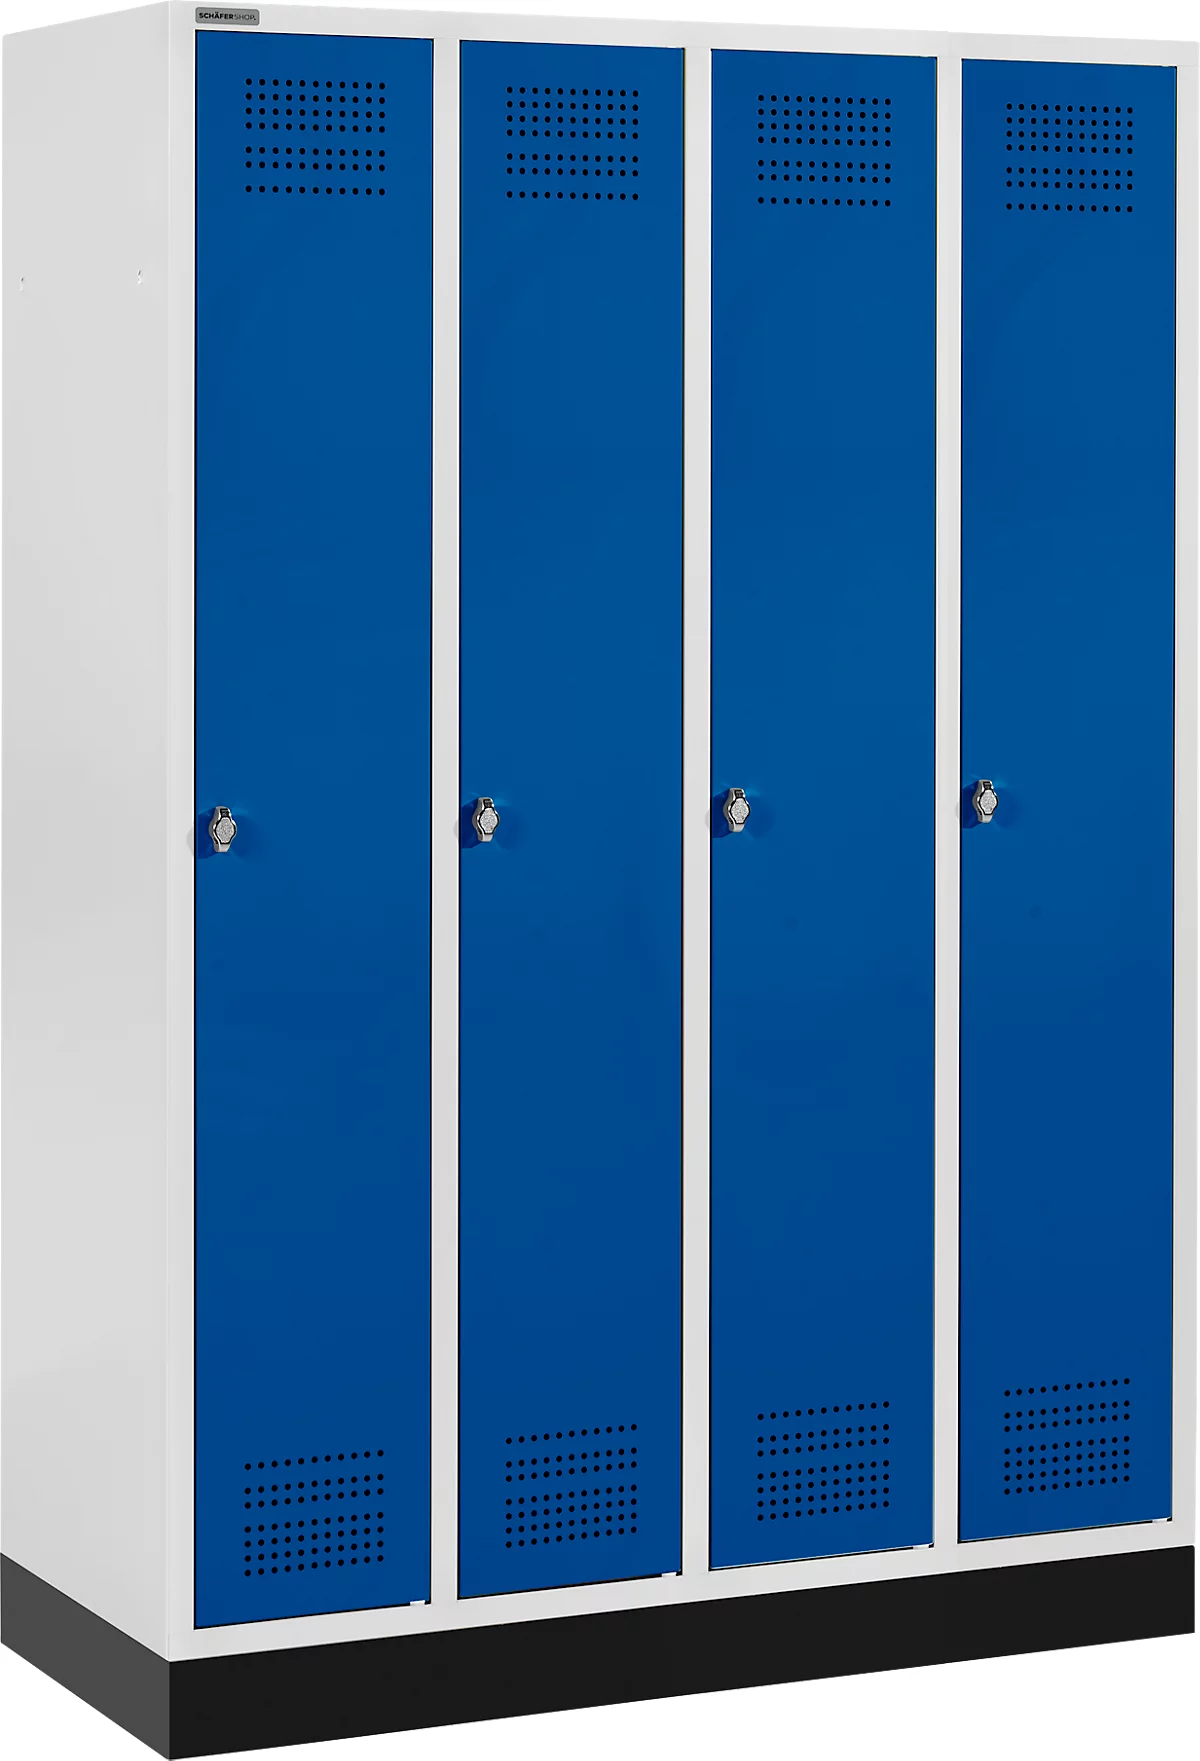 Schäfer Shop Genius Taquilla con zócalo, 4 compartimentos, cierre de pasador giratorio, gris luminoso/azul genciana